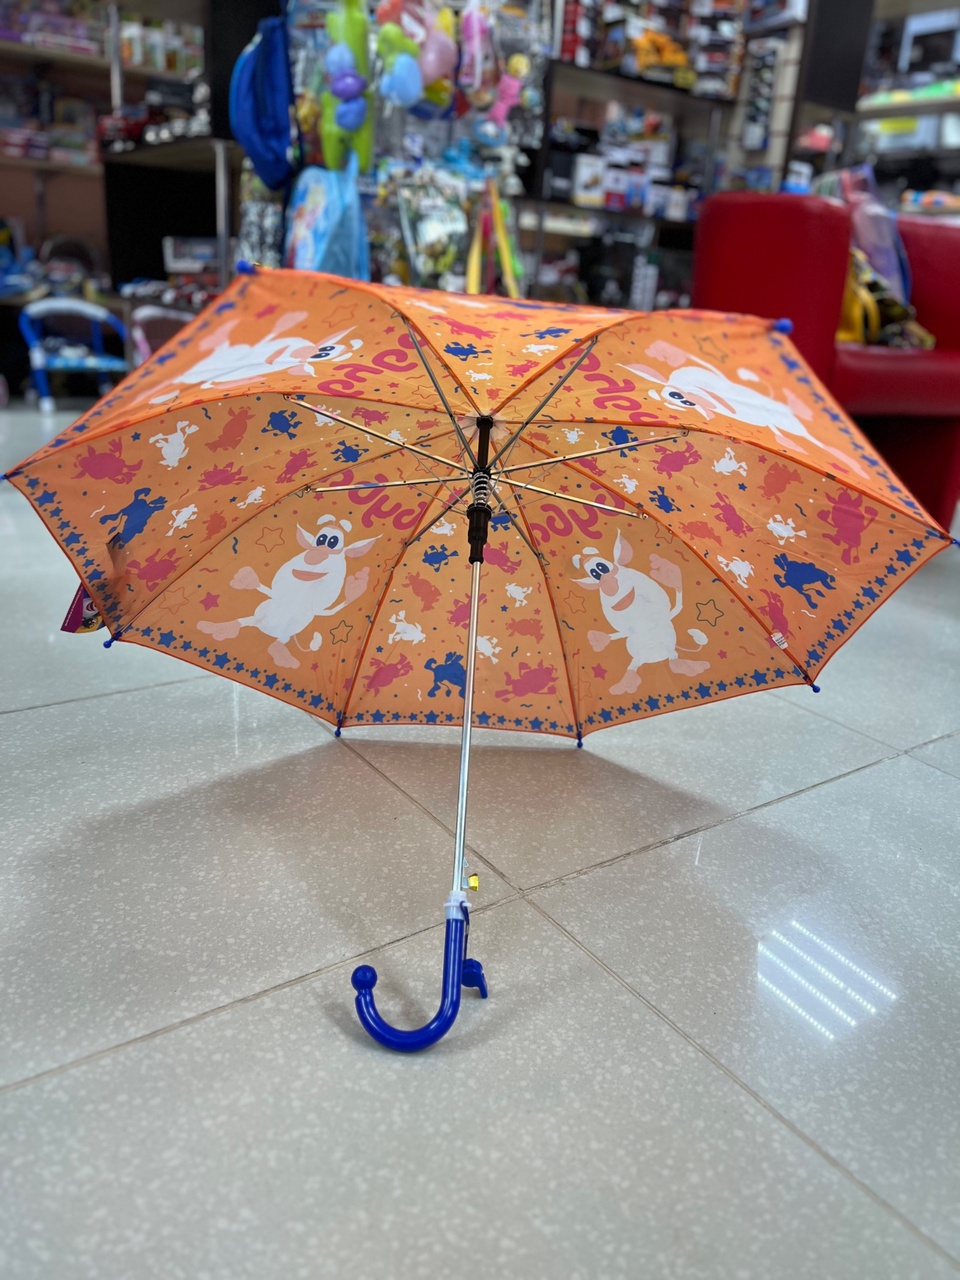 Зонт с любимым героем - 670 ₽, заказать онлайн.